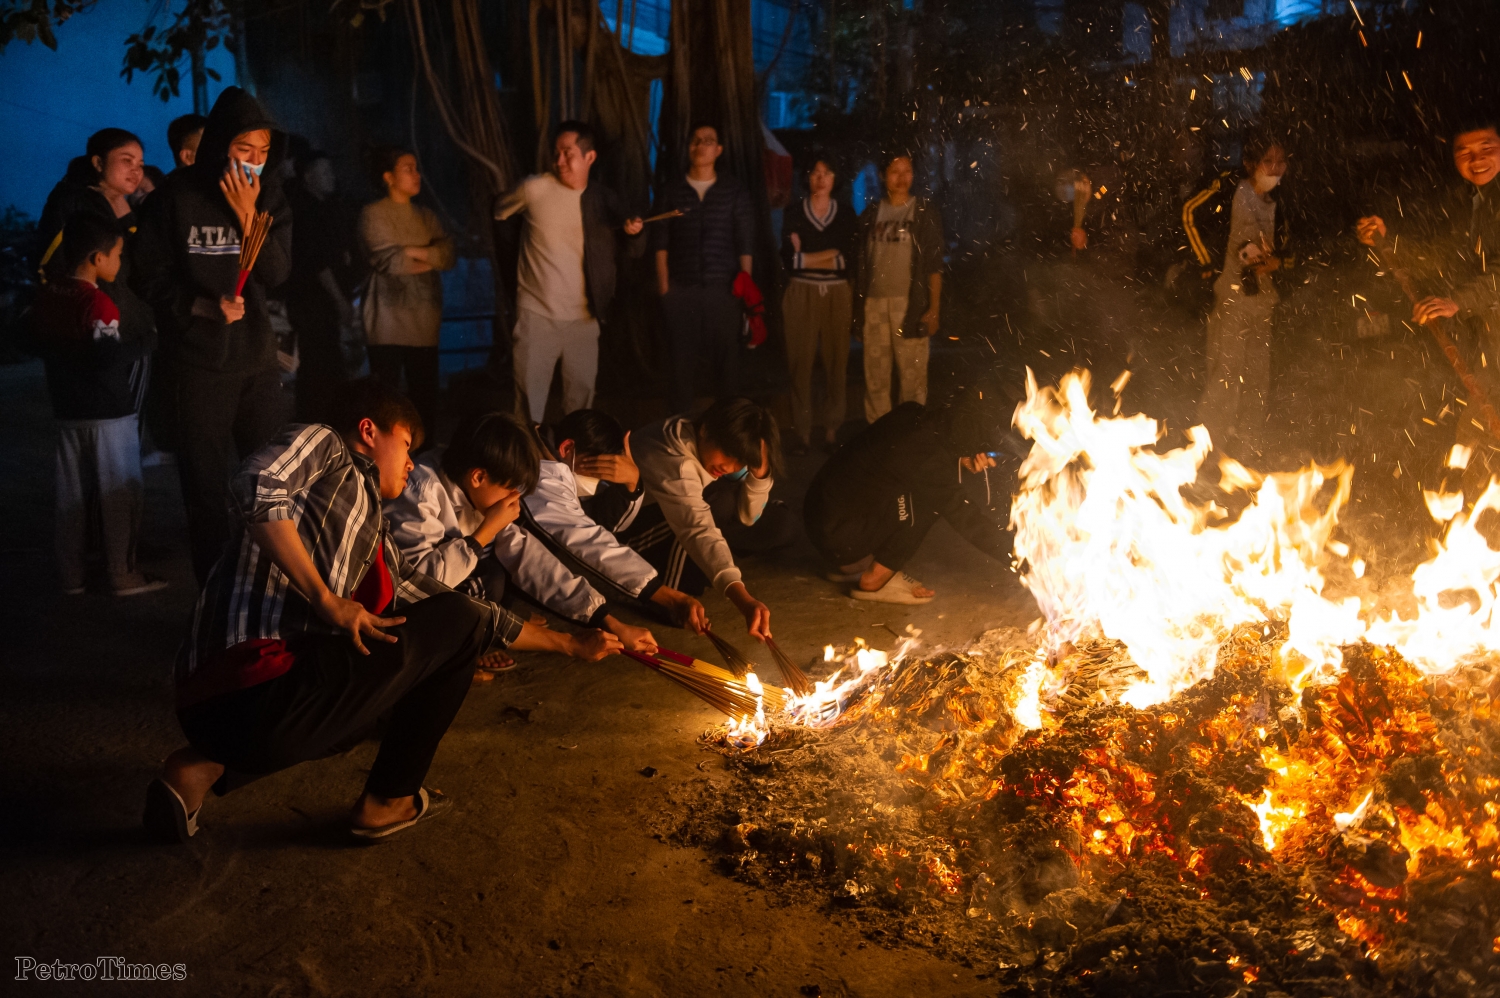 Độc đáo lễ hội rước lửa lấy may dịp năm mới